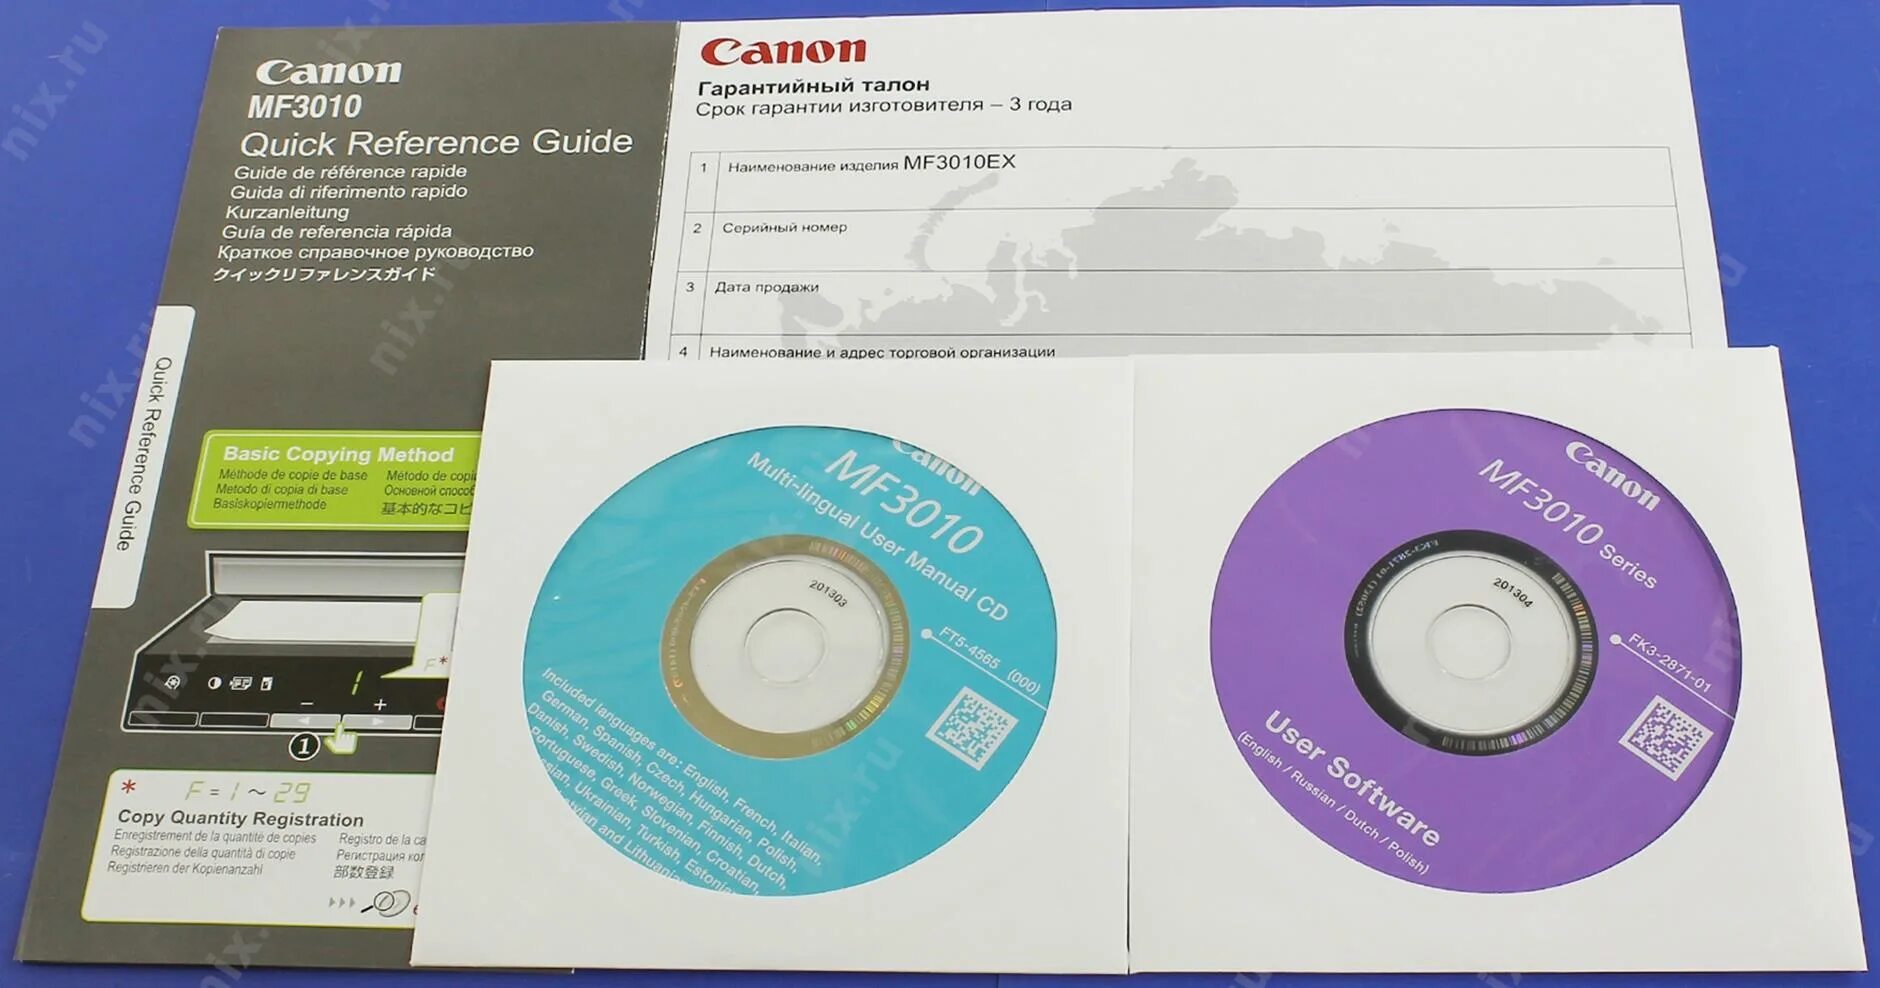 Загрузочный диск для принтера Canon mf3010. Загрузочный диск для принтера Canon mf3110. Canon i-SENSYS mf3010. Установочный диск принтера Canon 1030. Изготовитель драйверов